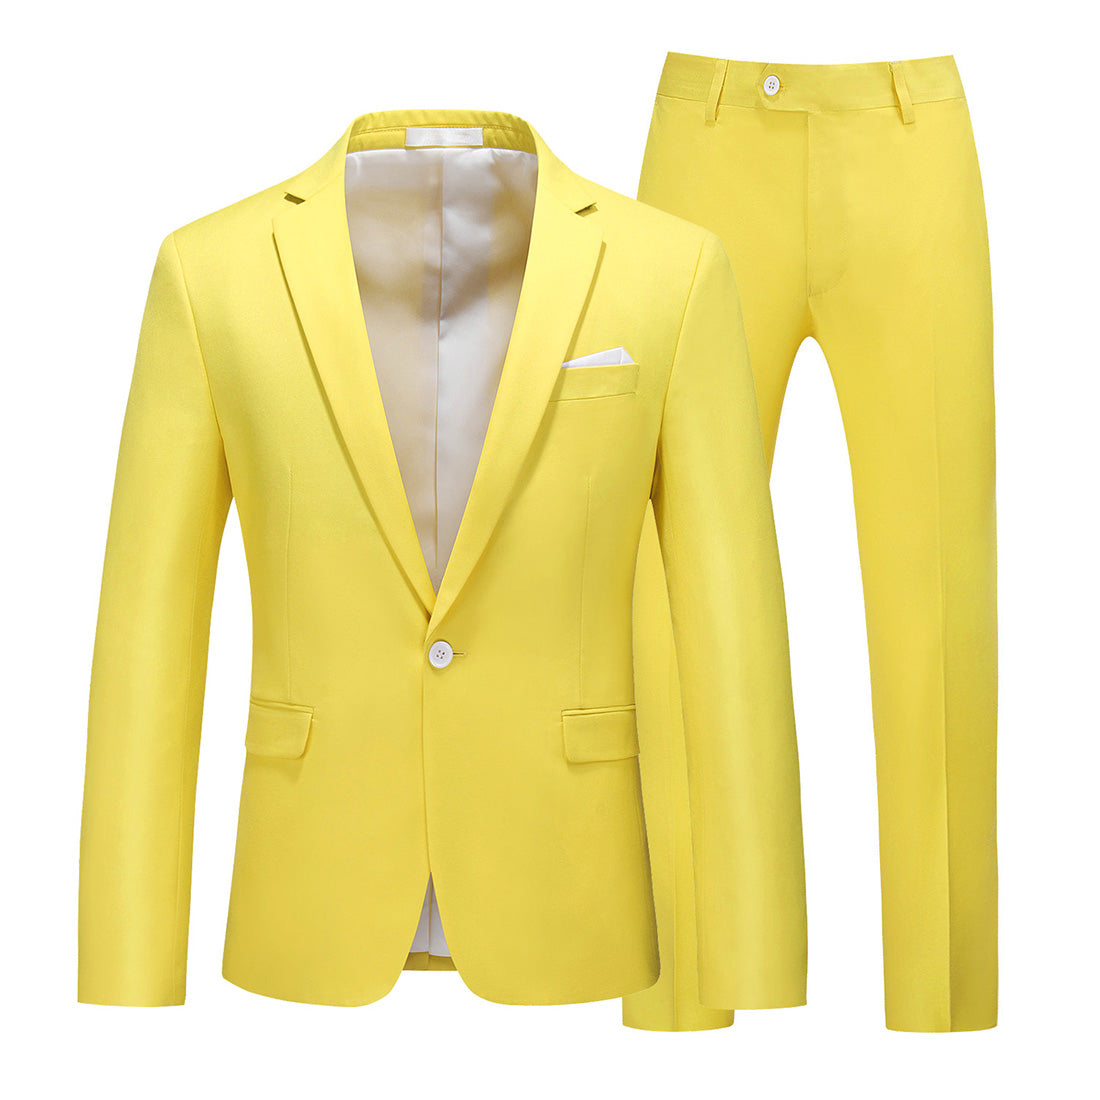 Men 2 Piece Suit Pink & Yellow & Grey Plain Colors One Button Closure